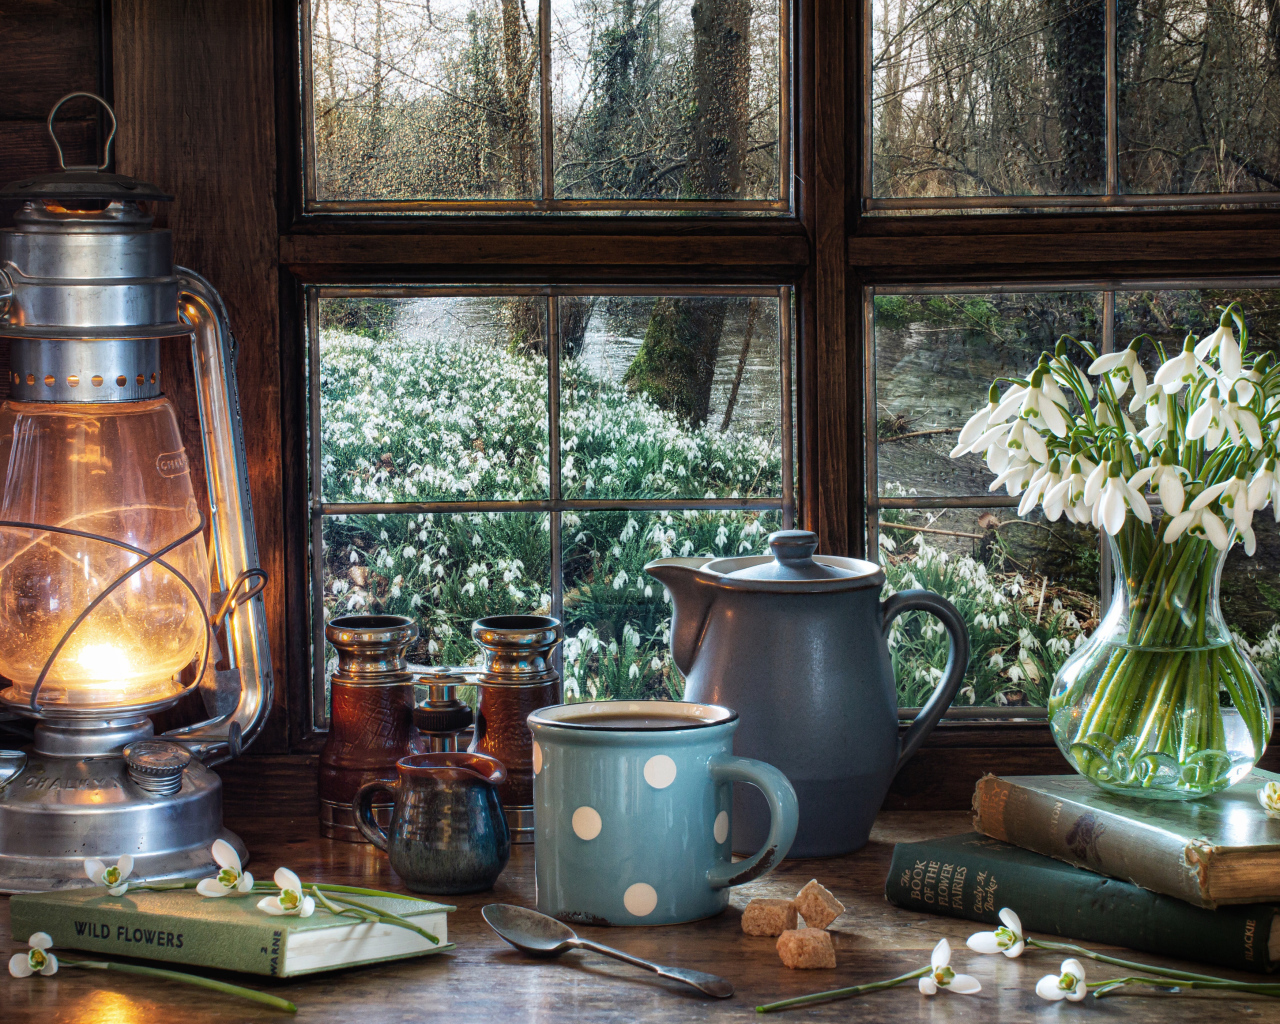 Керосиновая лампа на столе с кружкой, книгами и букетом подснежников у окна